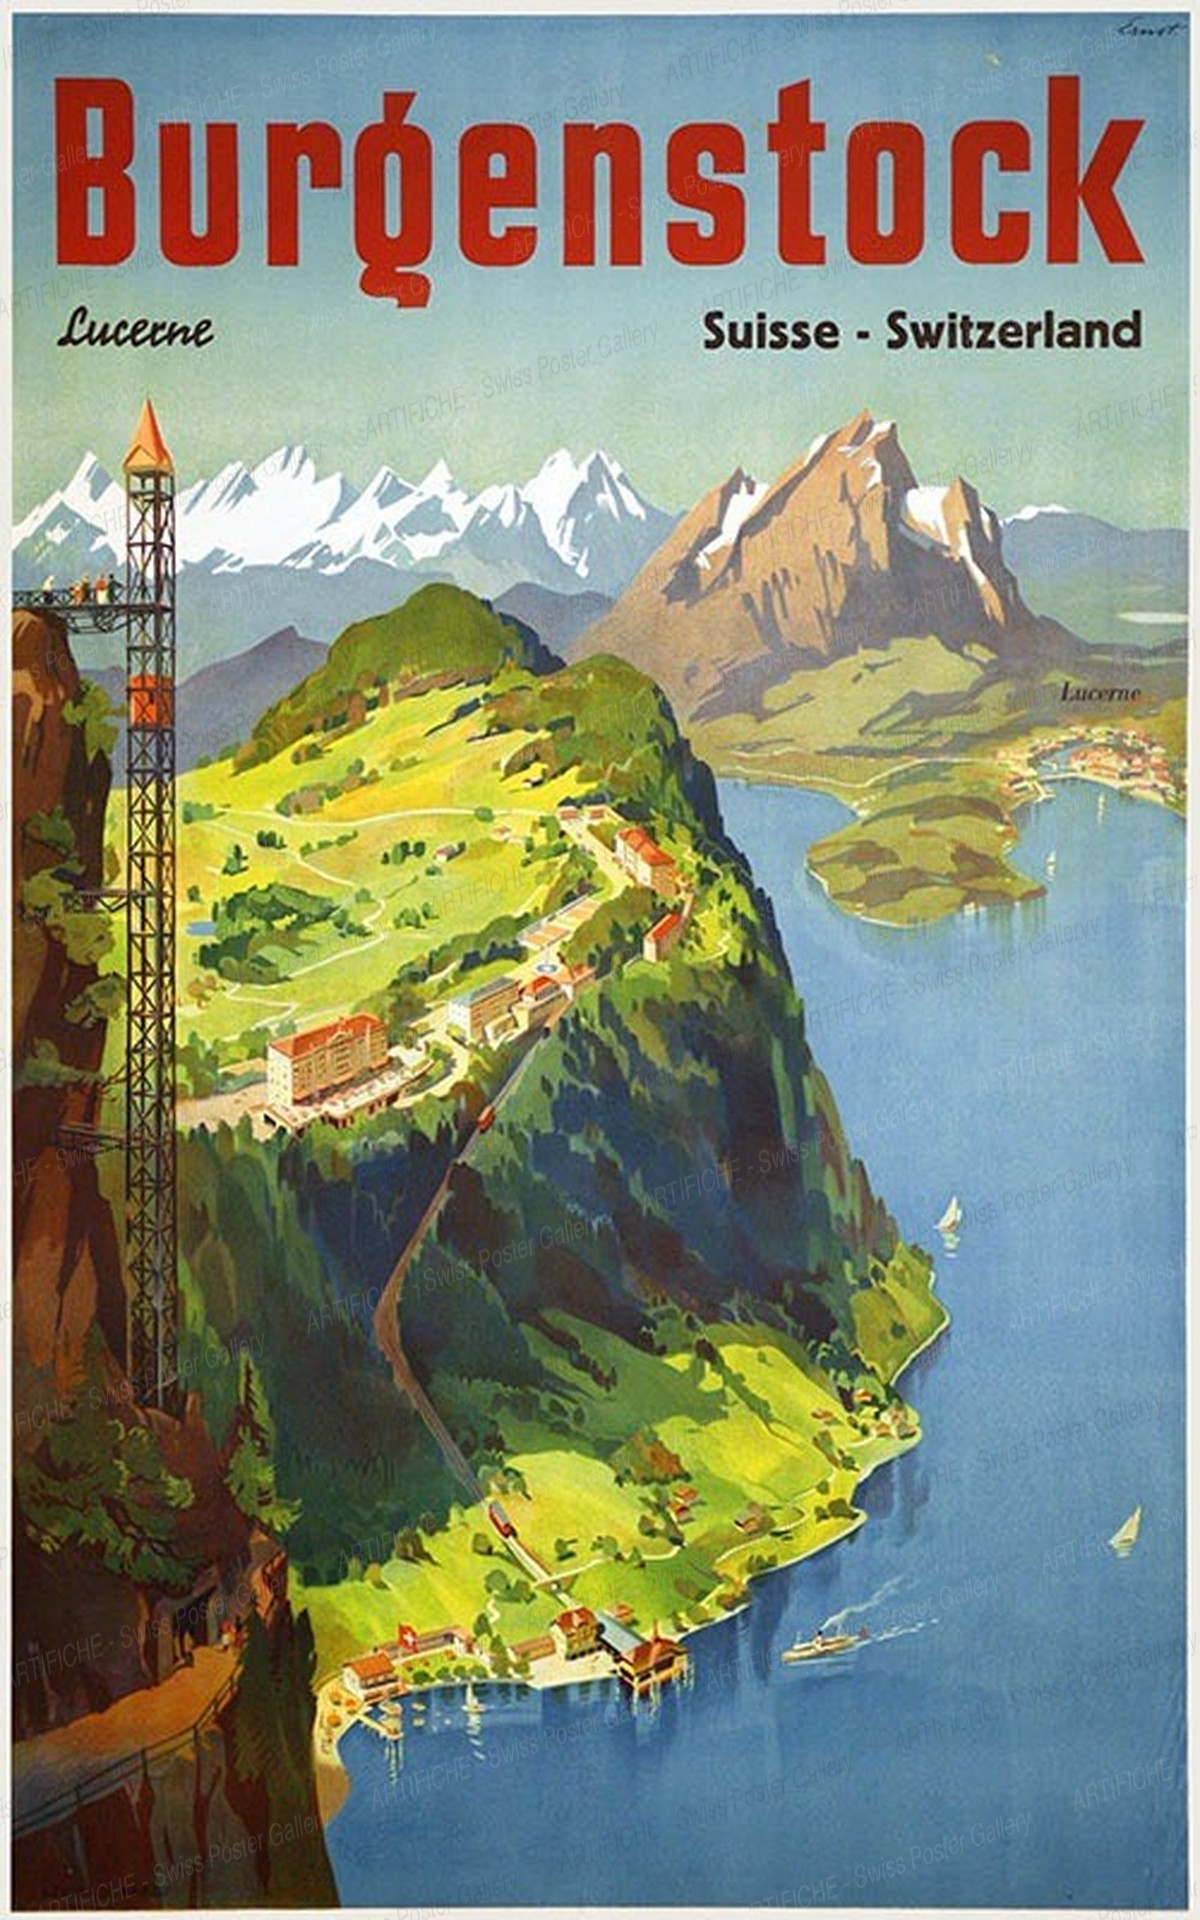 Bürgenstock Lucerne Suisse Switzerland, Otto Ernst